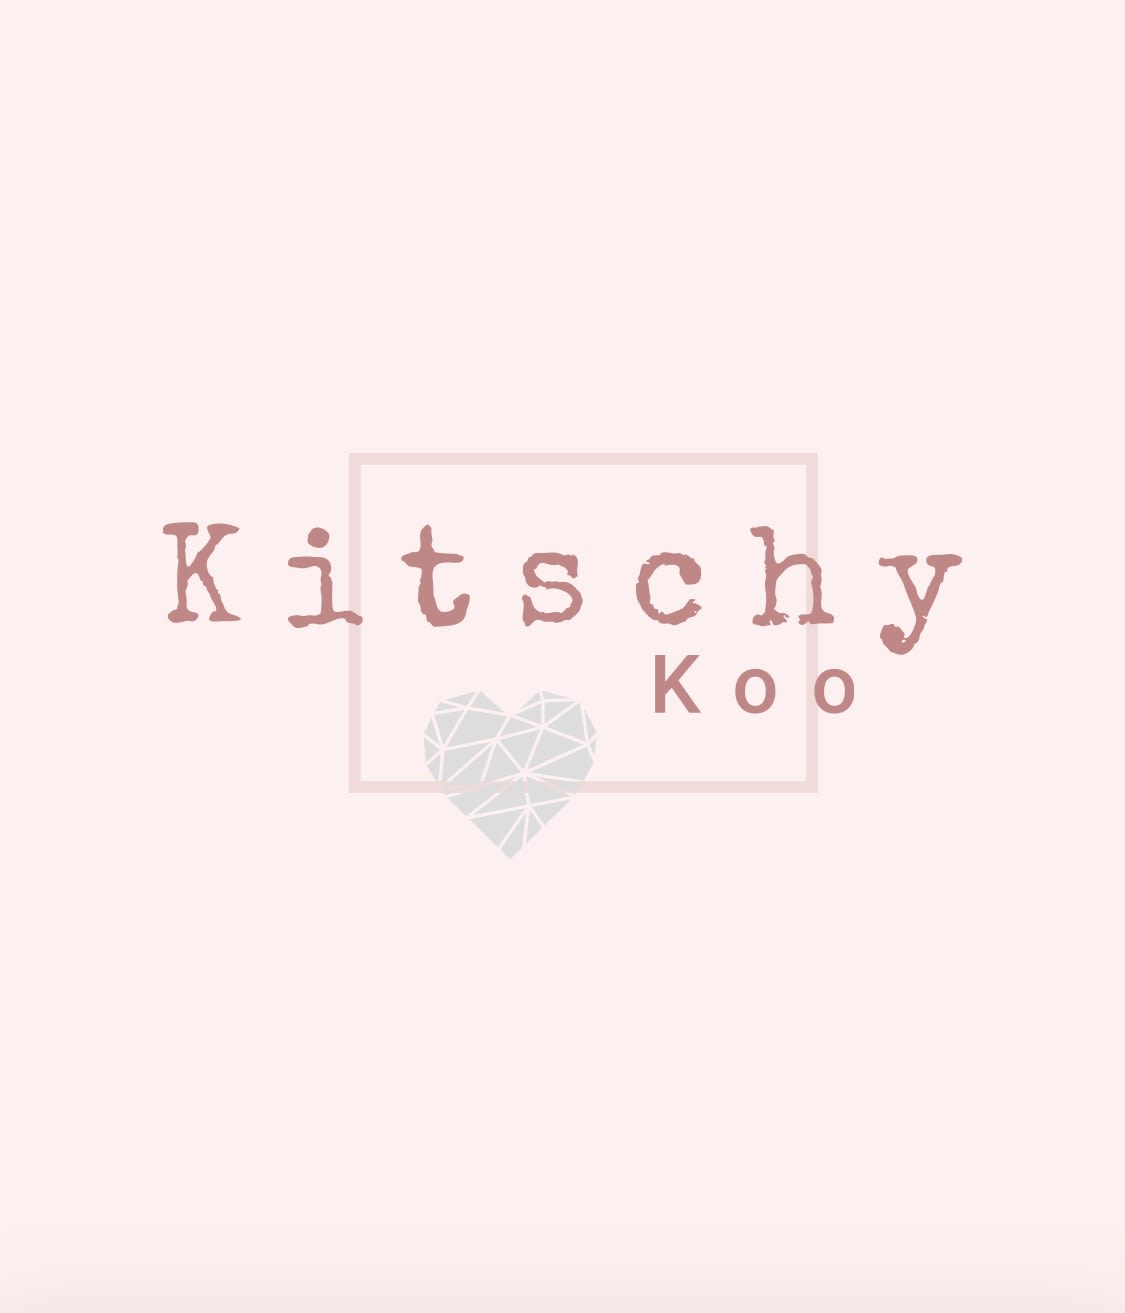 Kitschy Koo